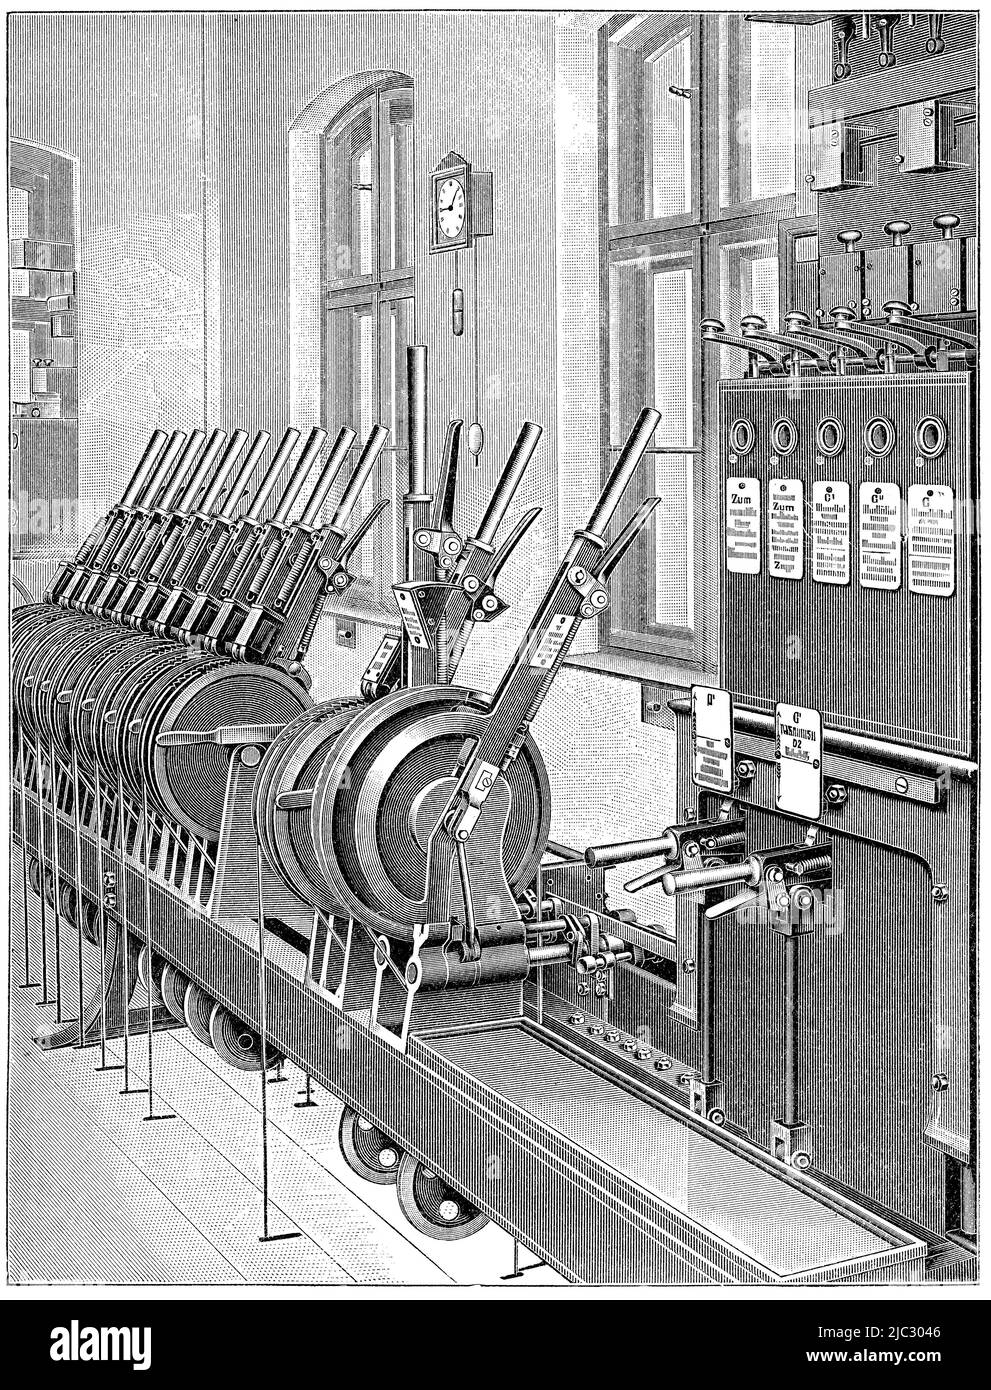 Equipo ferroviario - Mecanismo de palanca por Stahmer. Publicación del libro 'Meyers Konversations-Lexikon', Volumen 2, Leipzig, Alemania, 1910 Foto de stock